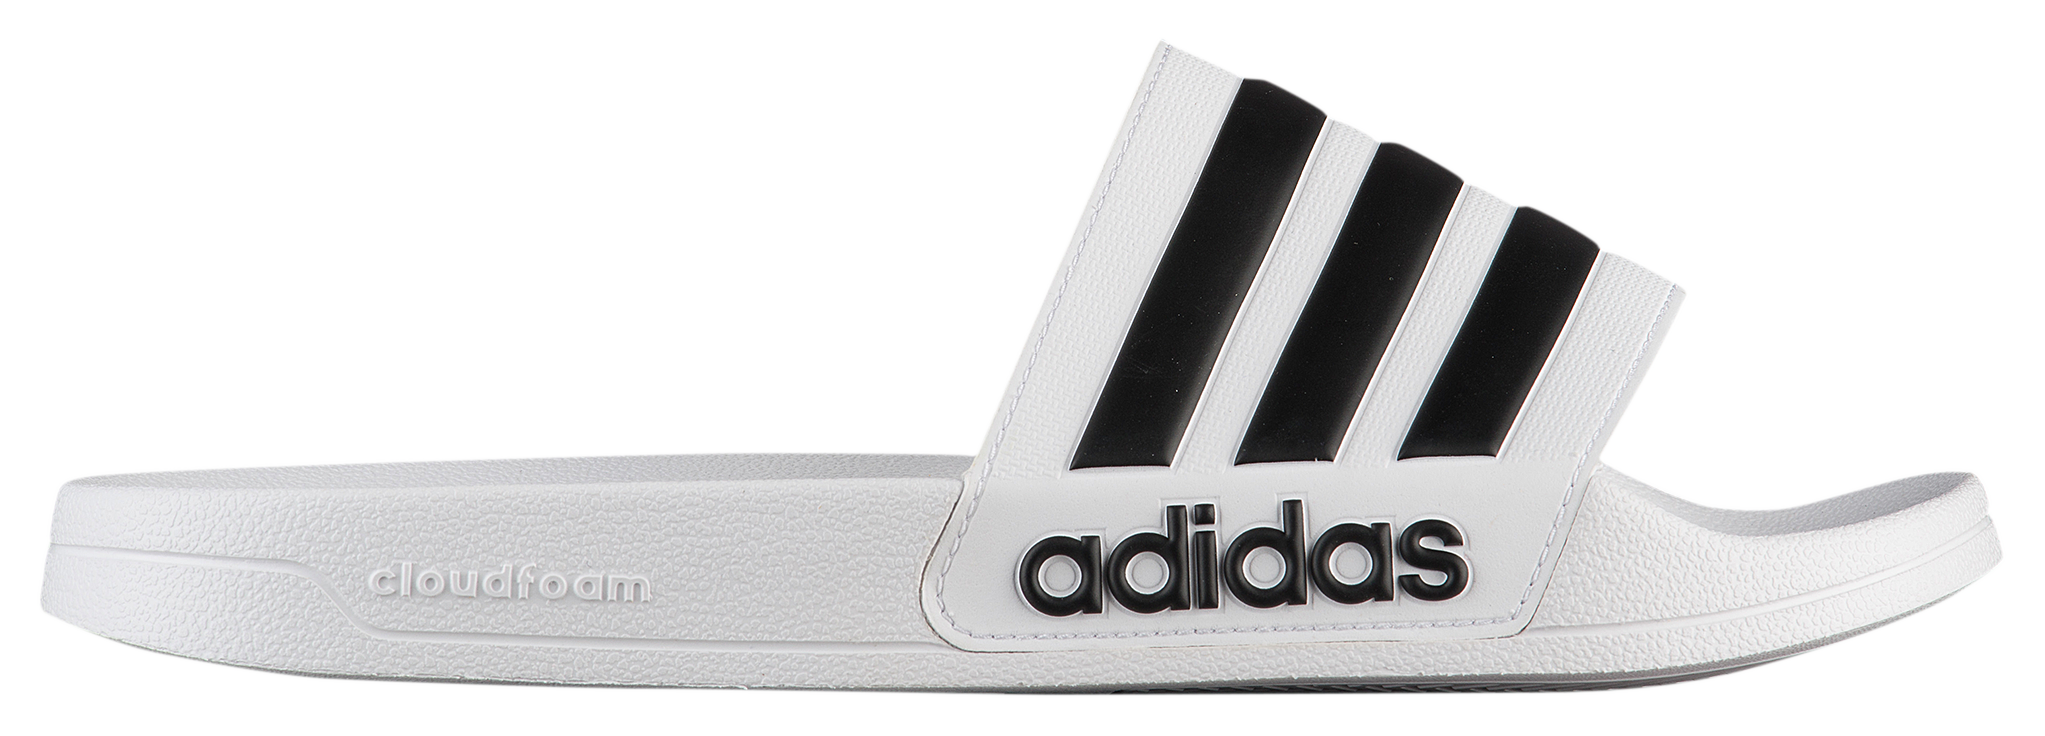 adidas slides foot locker